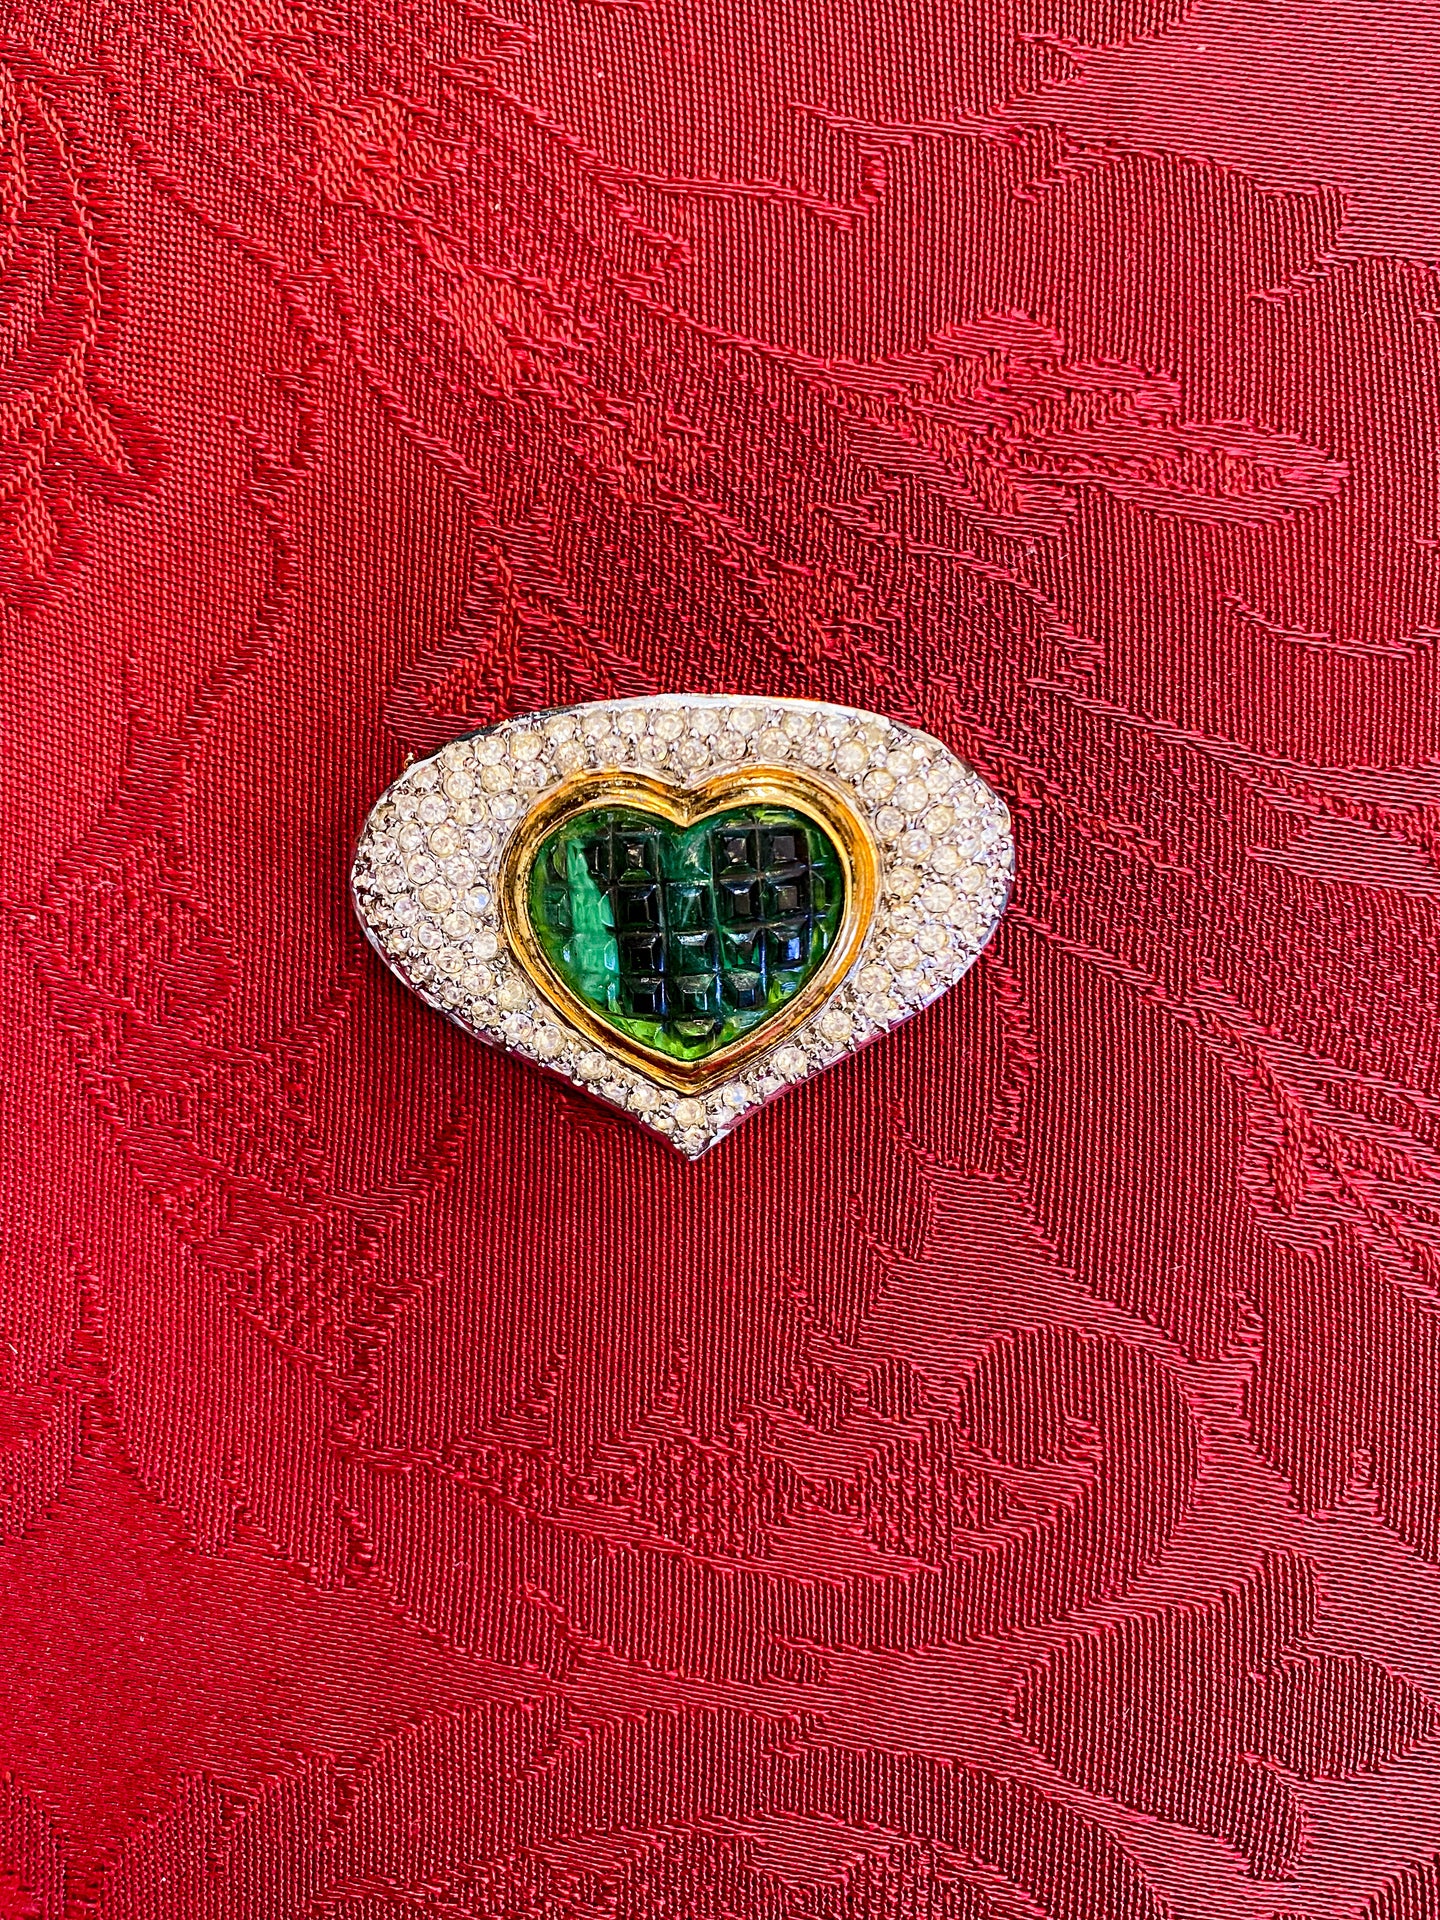 Heart - Vintage Brooch